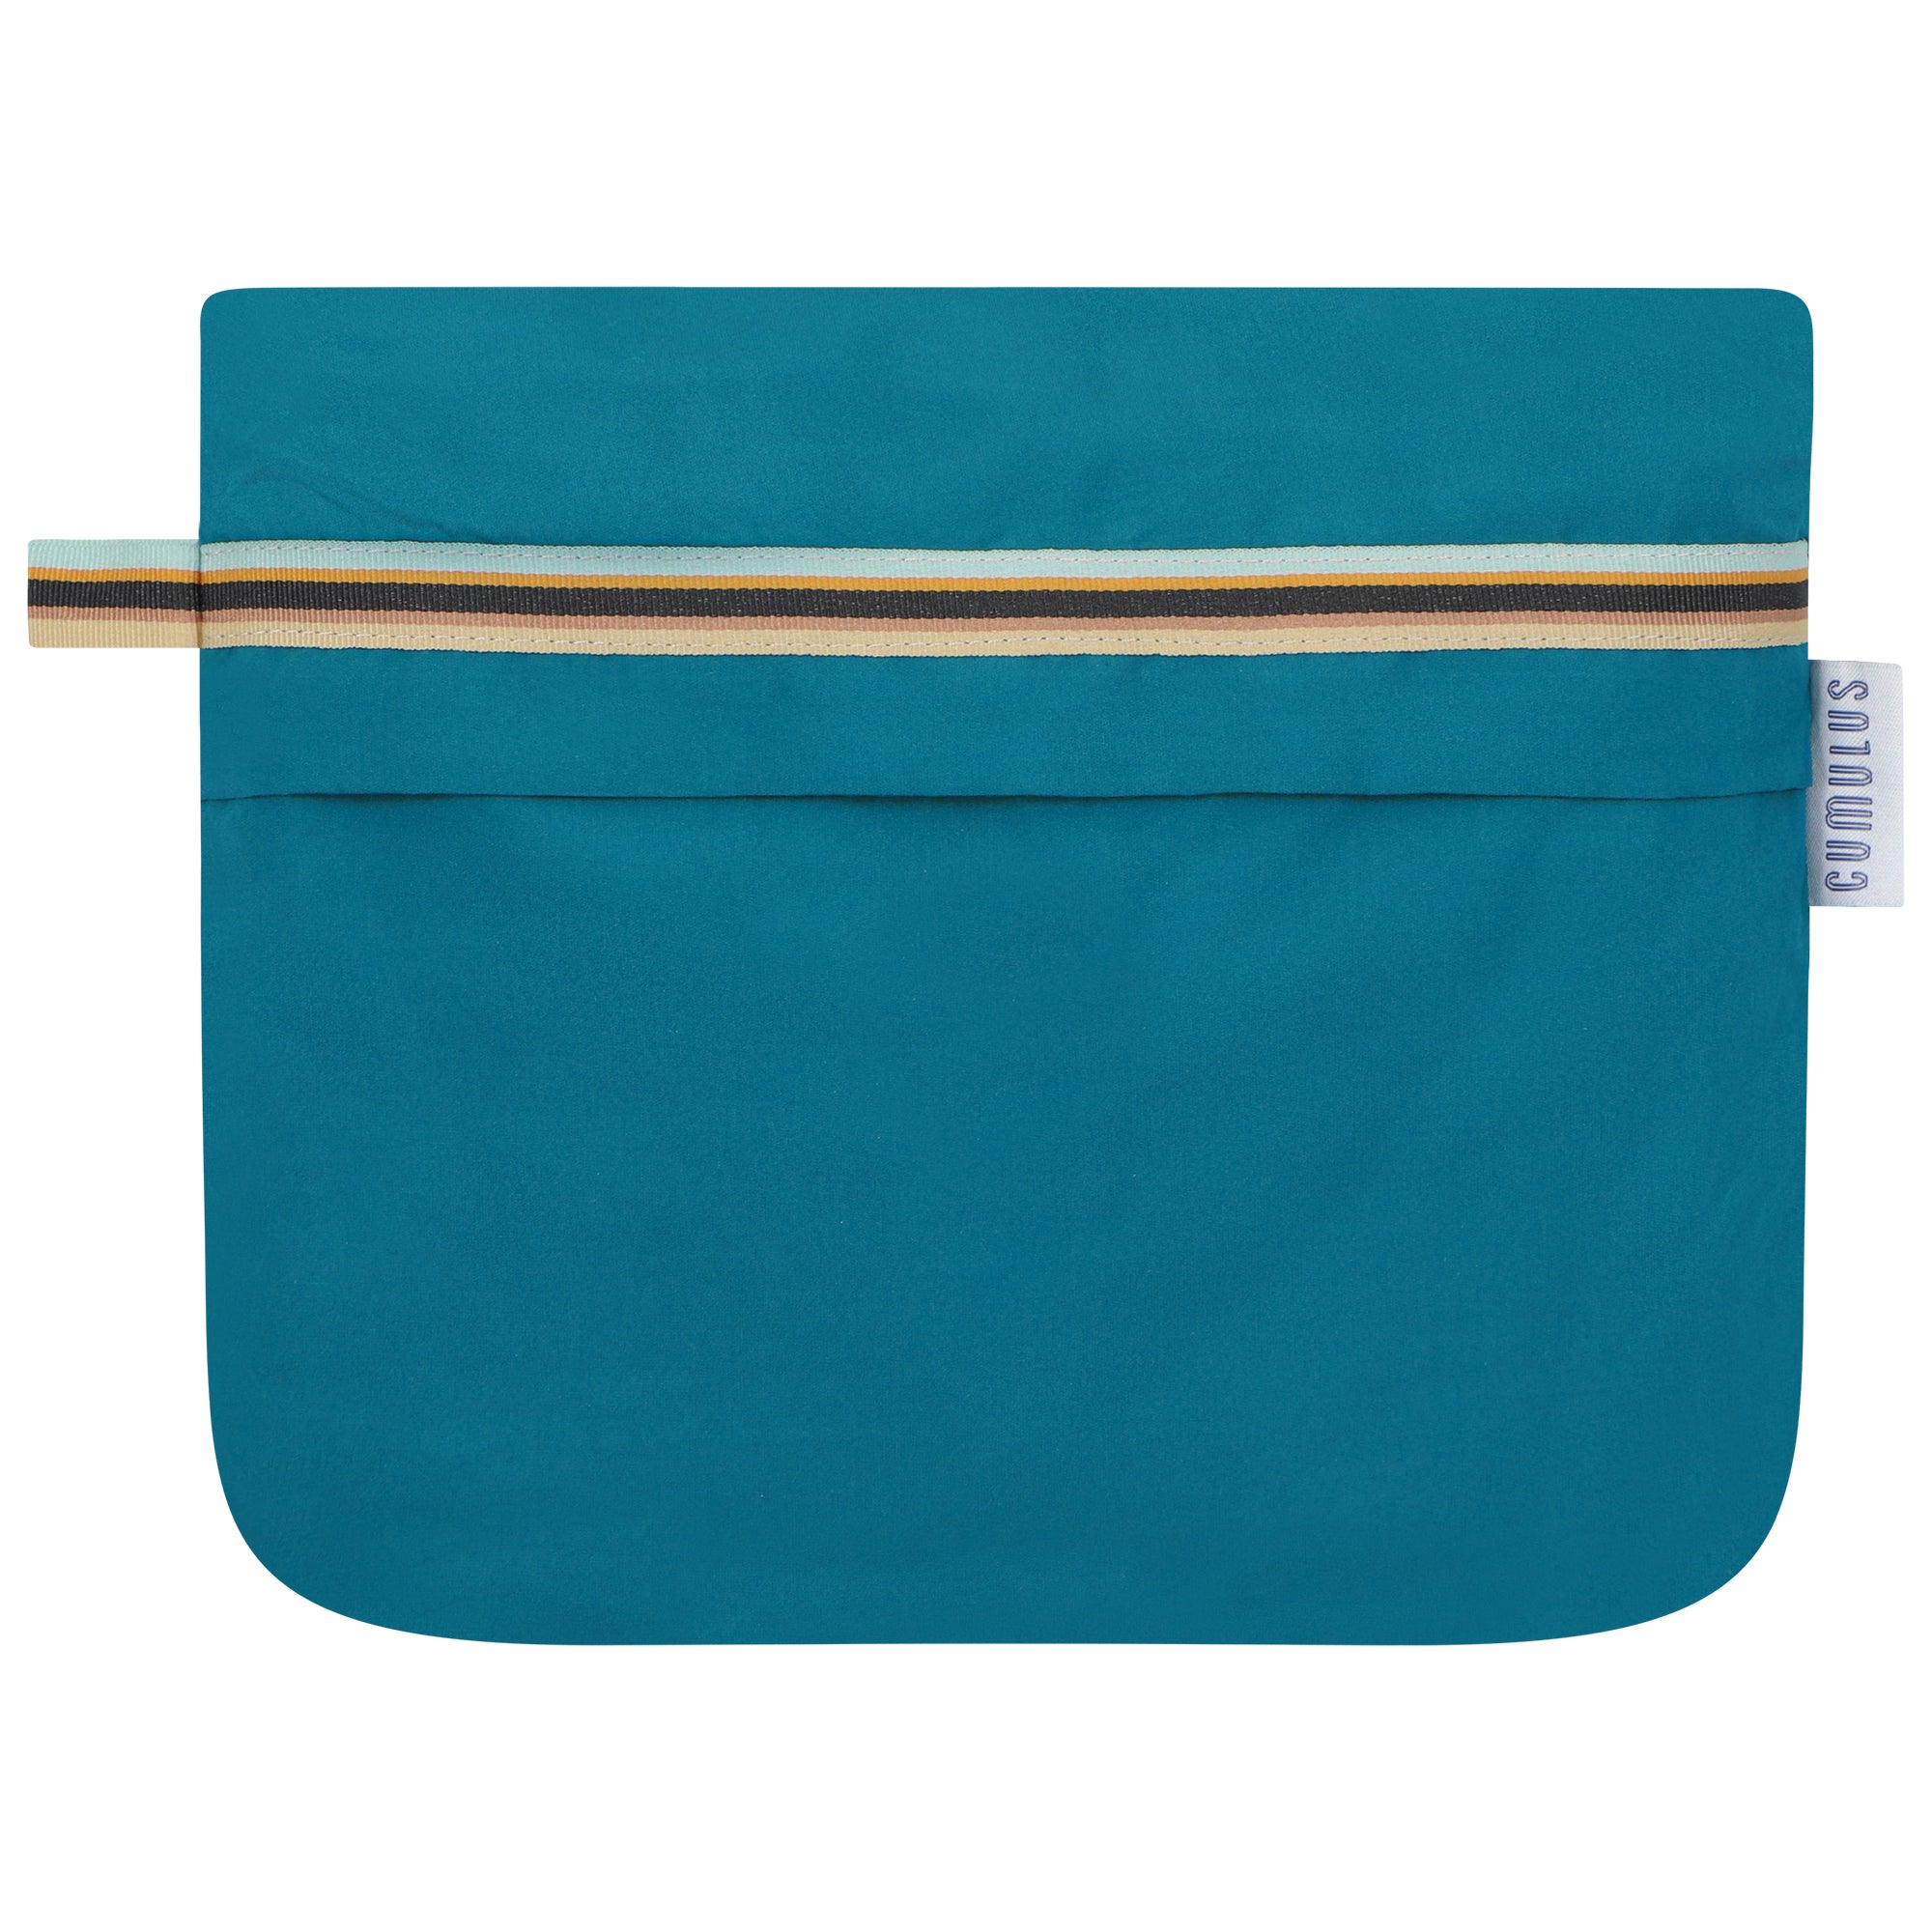 Bise raincoat - Ocean Blue color - pouch bag